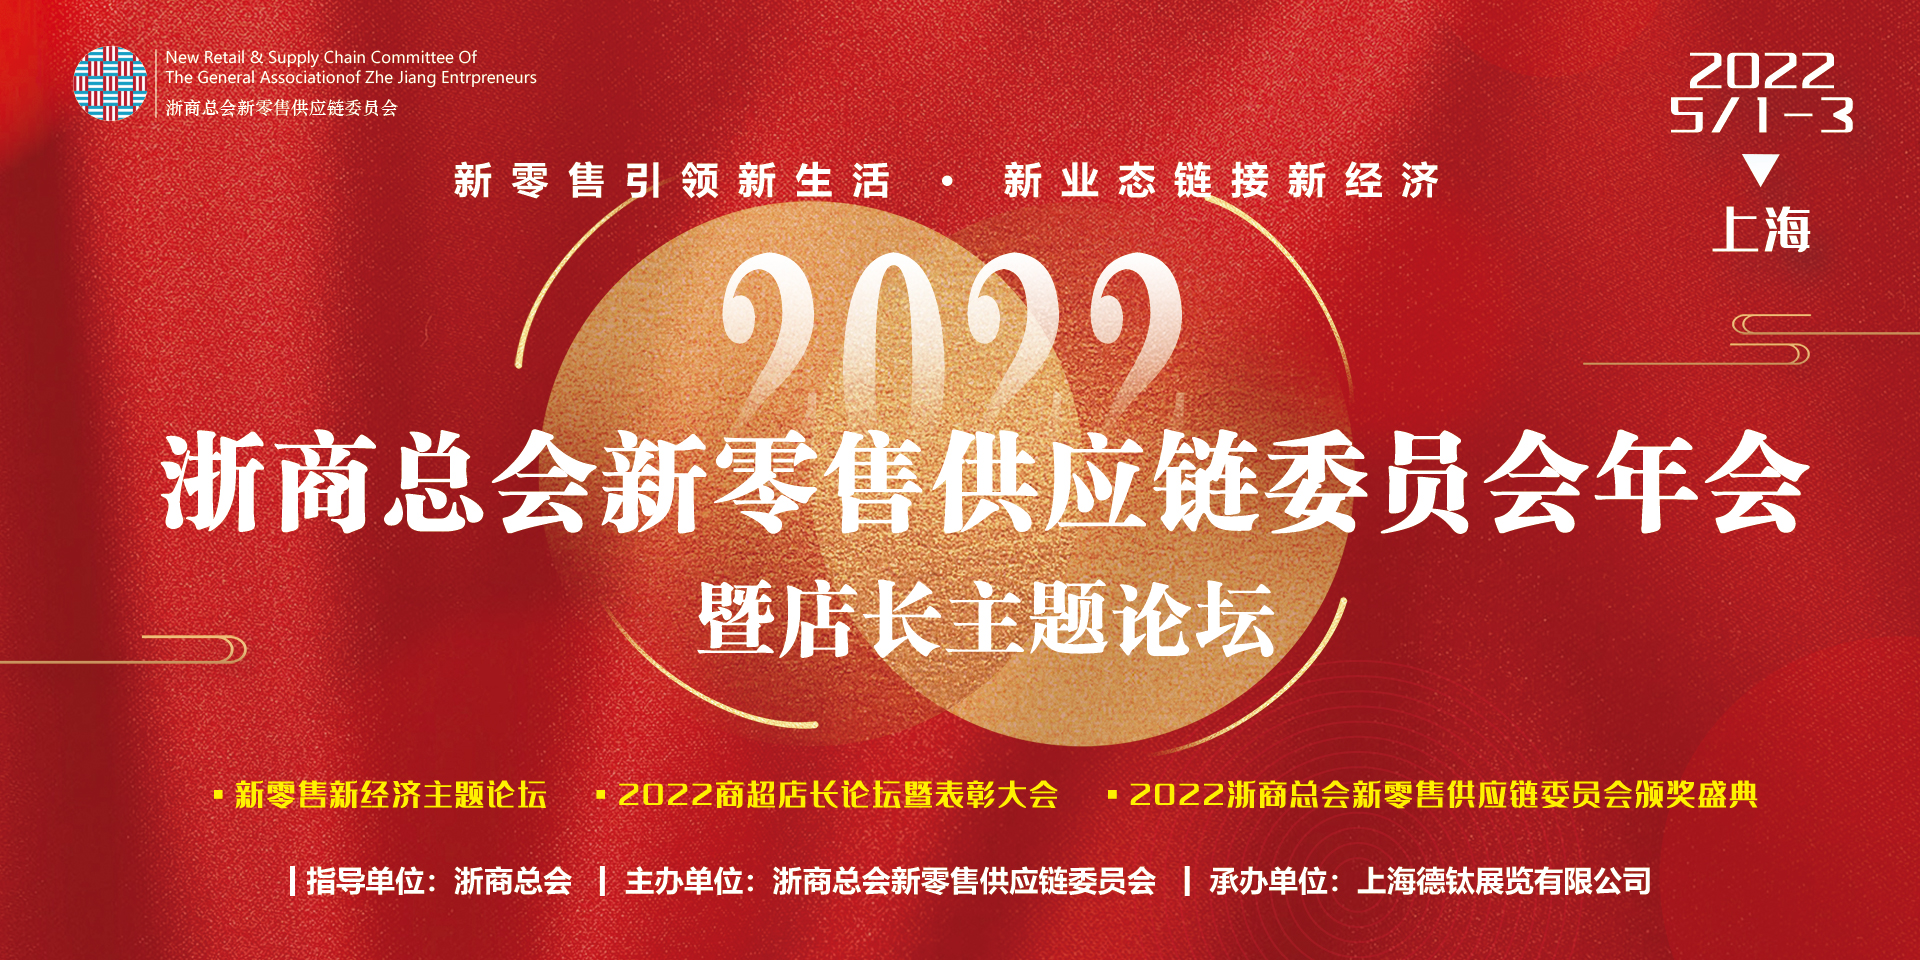 2022浙商总会新零售供应链委员会年会于5月1-2日在上海举办